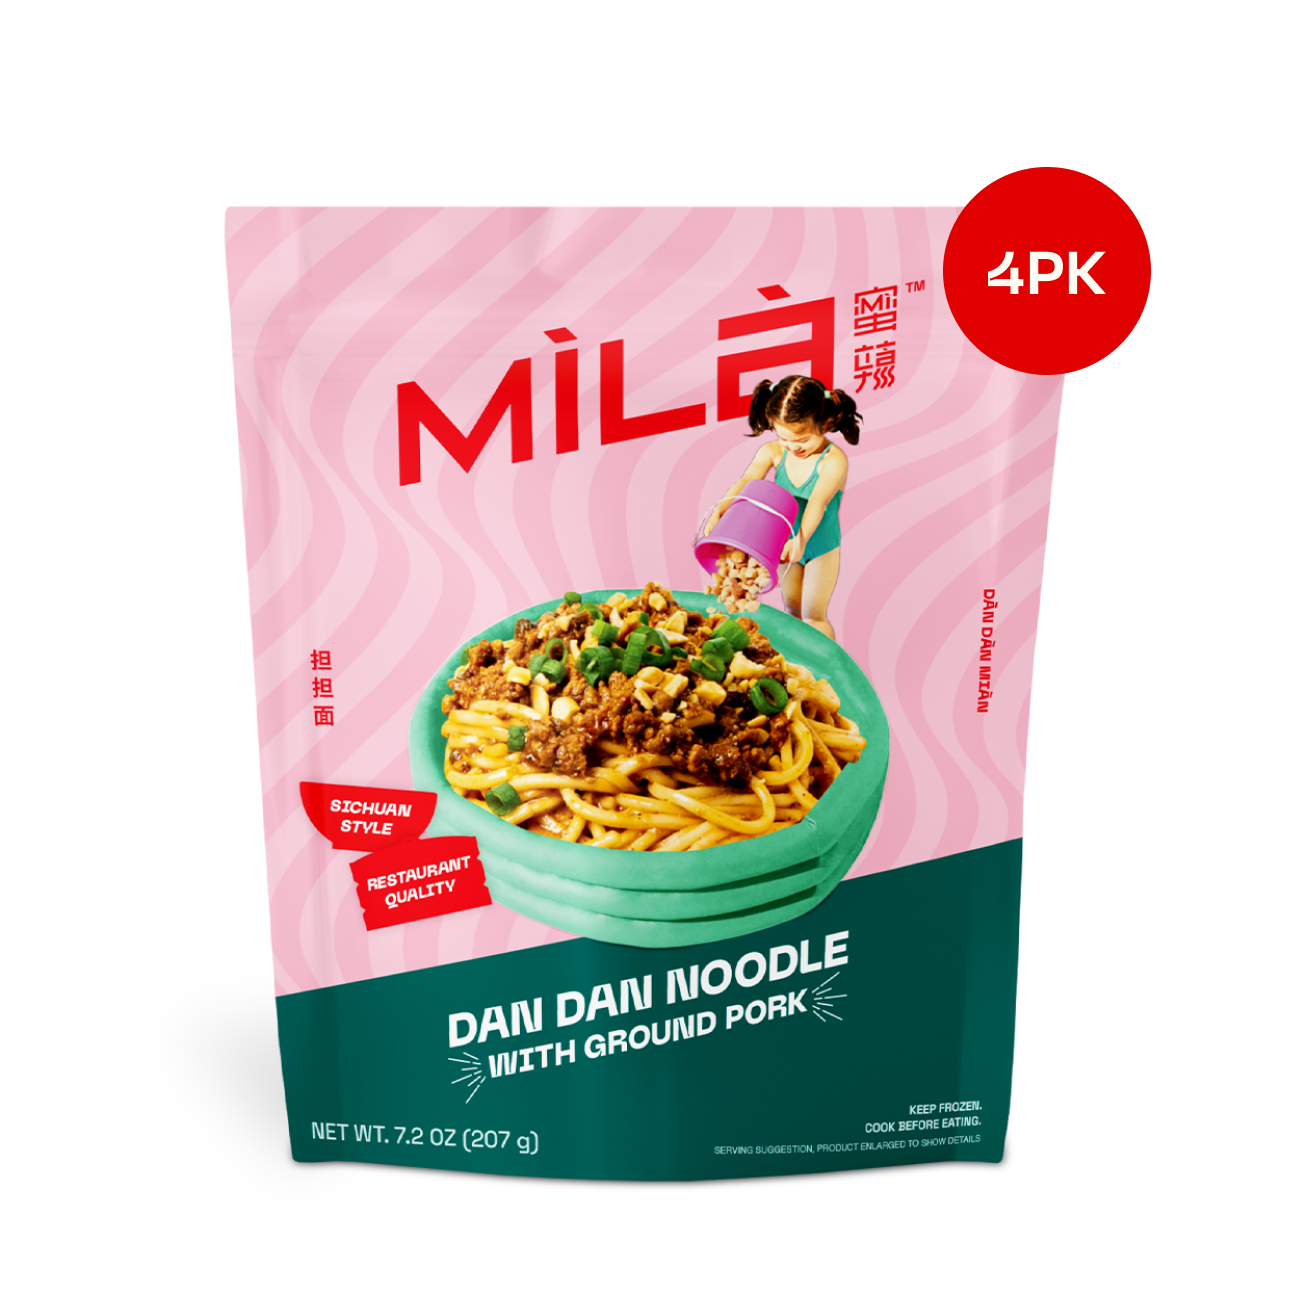 Spicy Dan Dan Noodle / Ground Pork